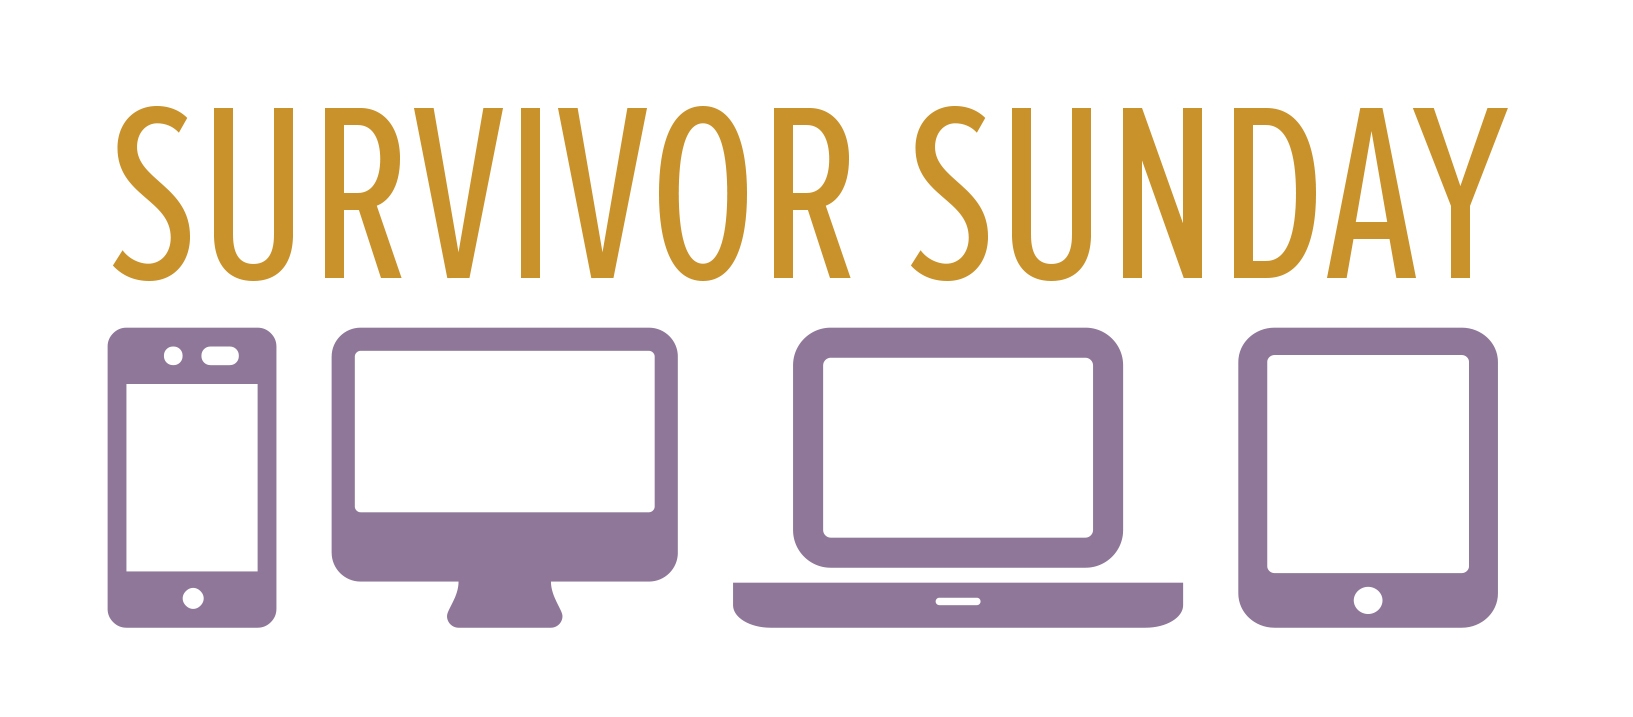 Survivor Sunday